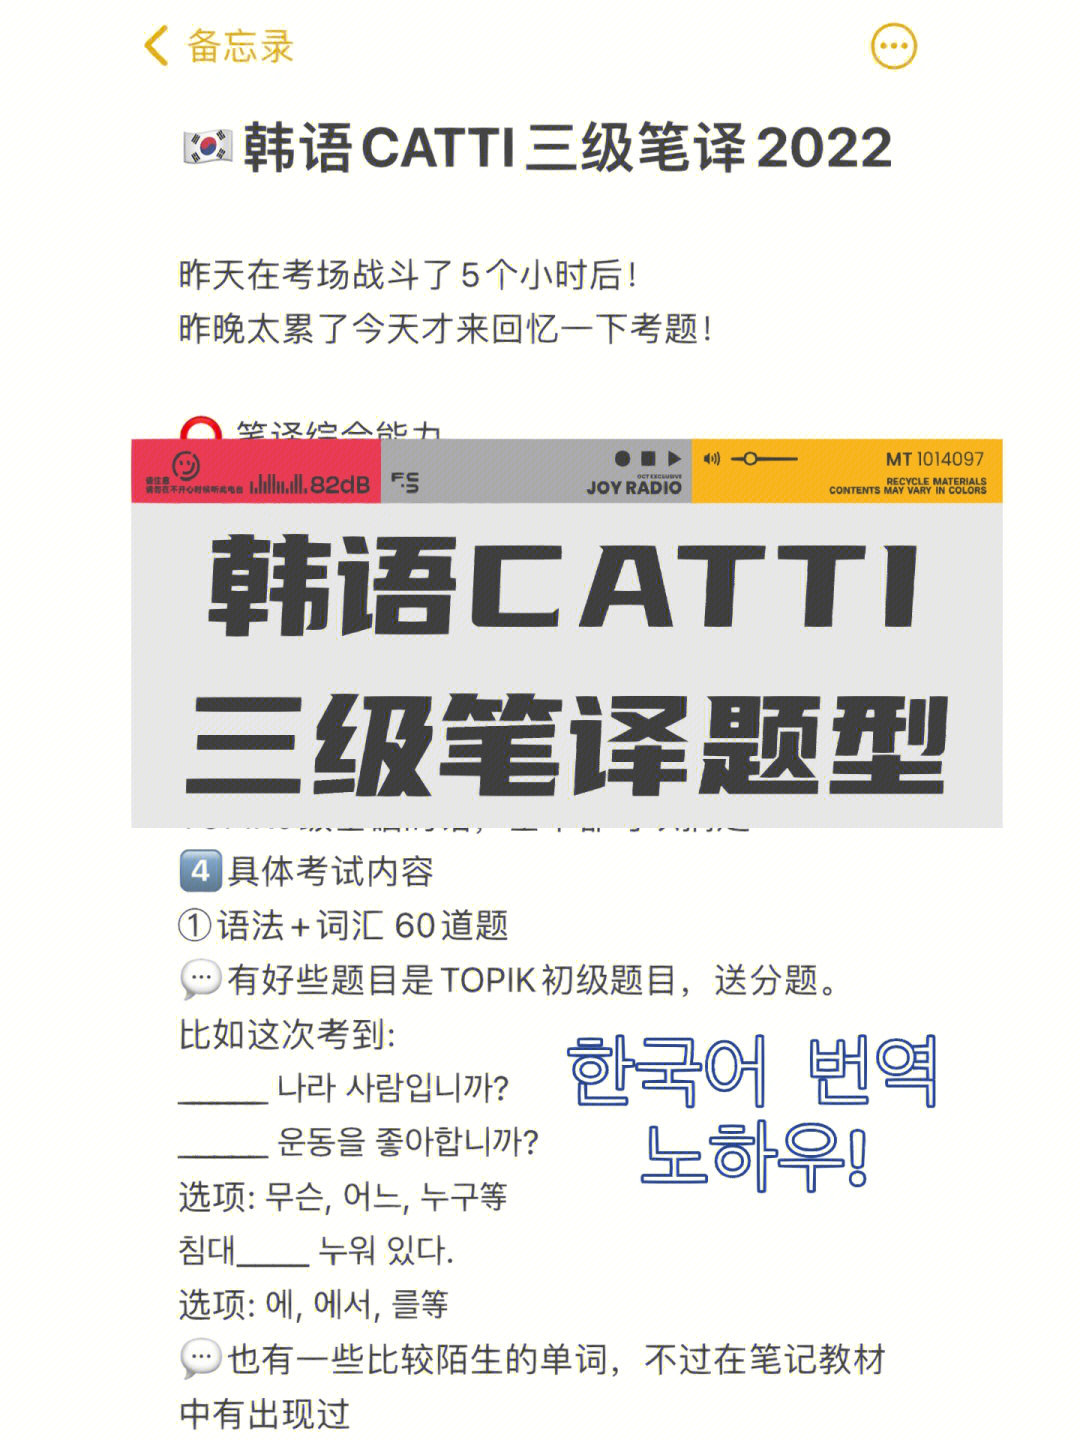 韩语catti三级笔译题型回顾77几点感受